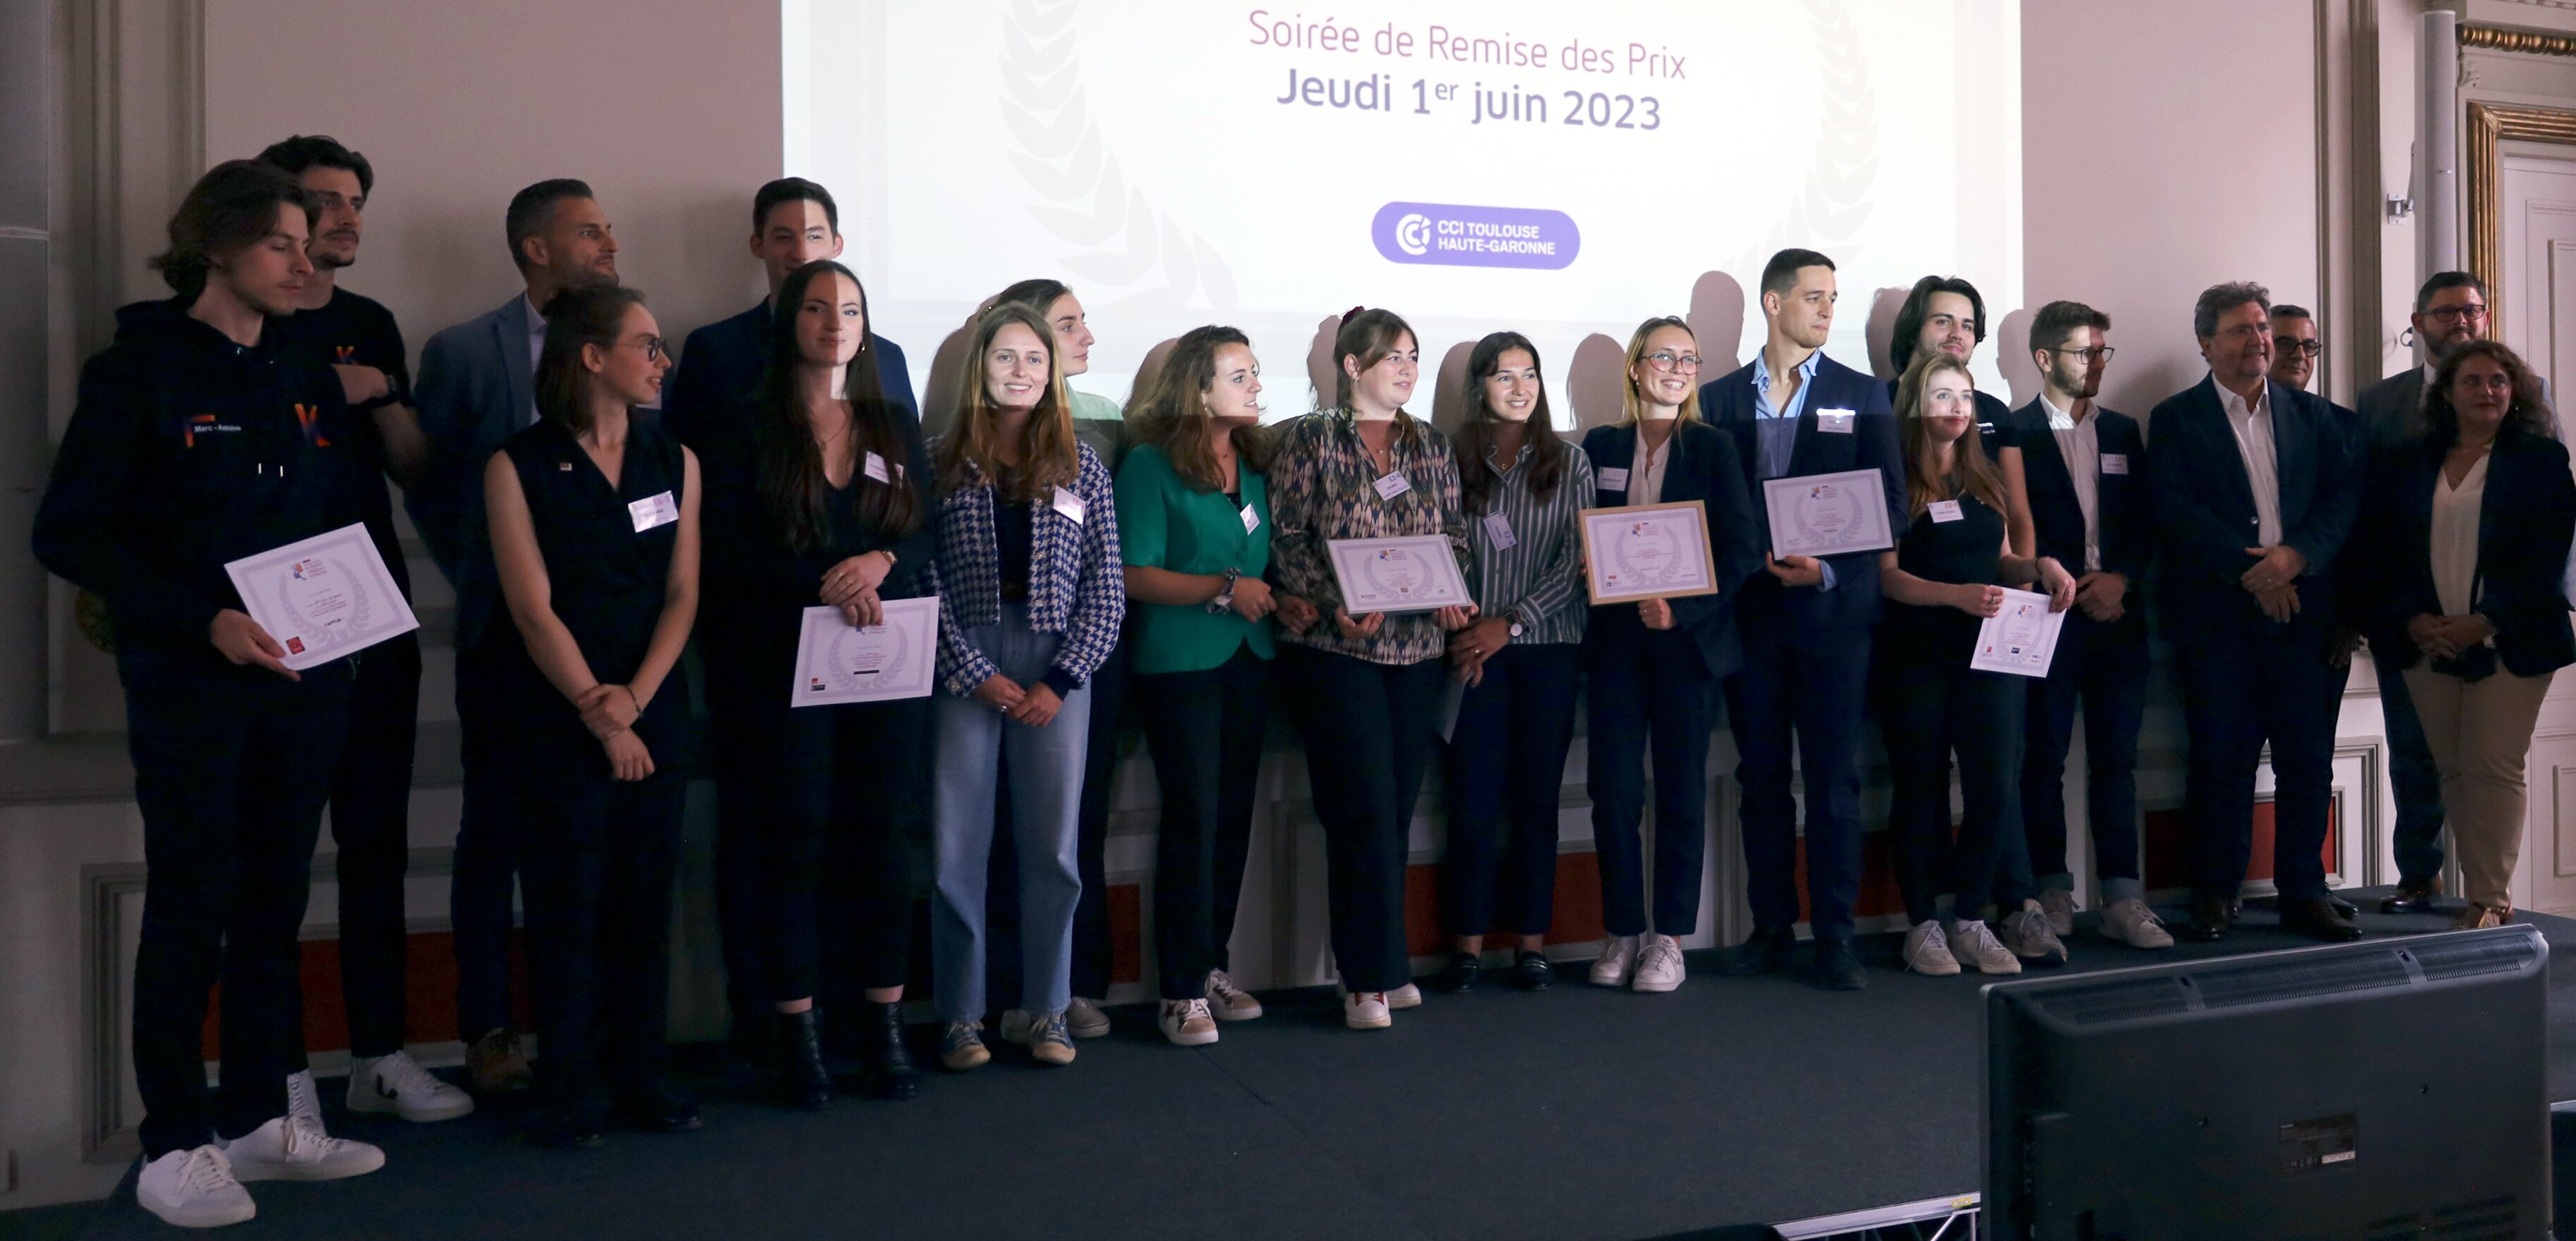 Les prix du Crece 2023 ont été remis aux lauréats dans les locaux de la CCI Toulouse/Haute-Garonne, jeudi 30 mai 2023. (Photo : Embry Films)